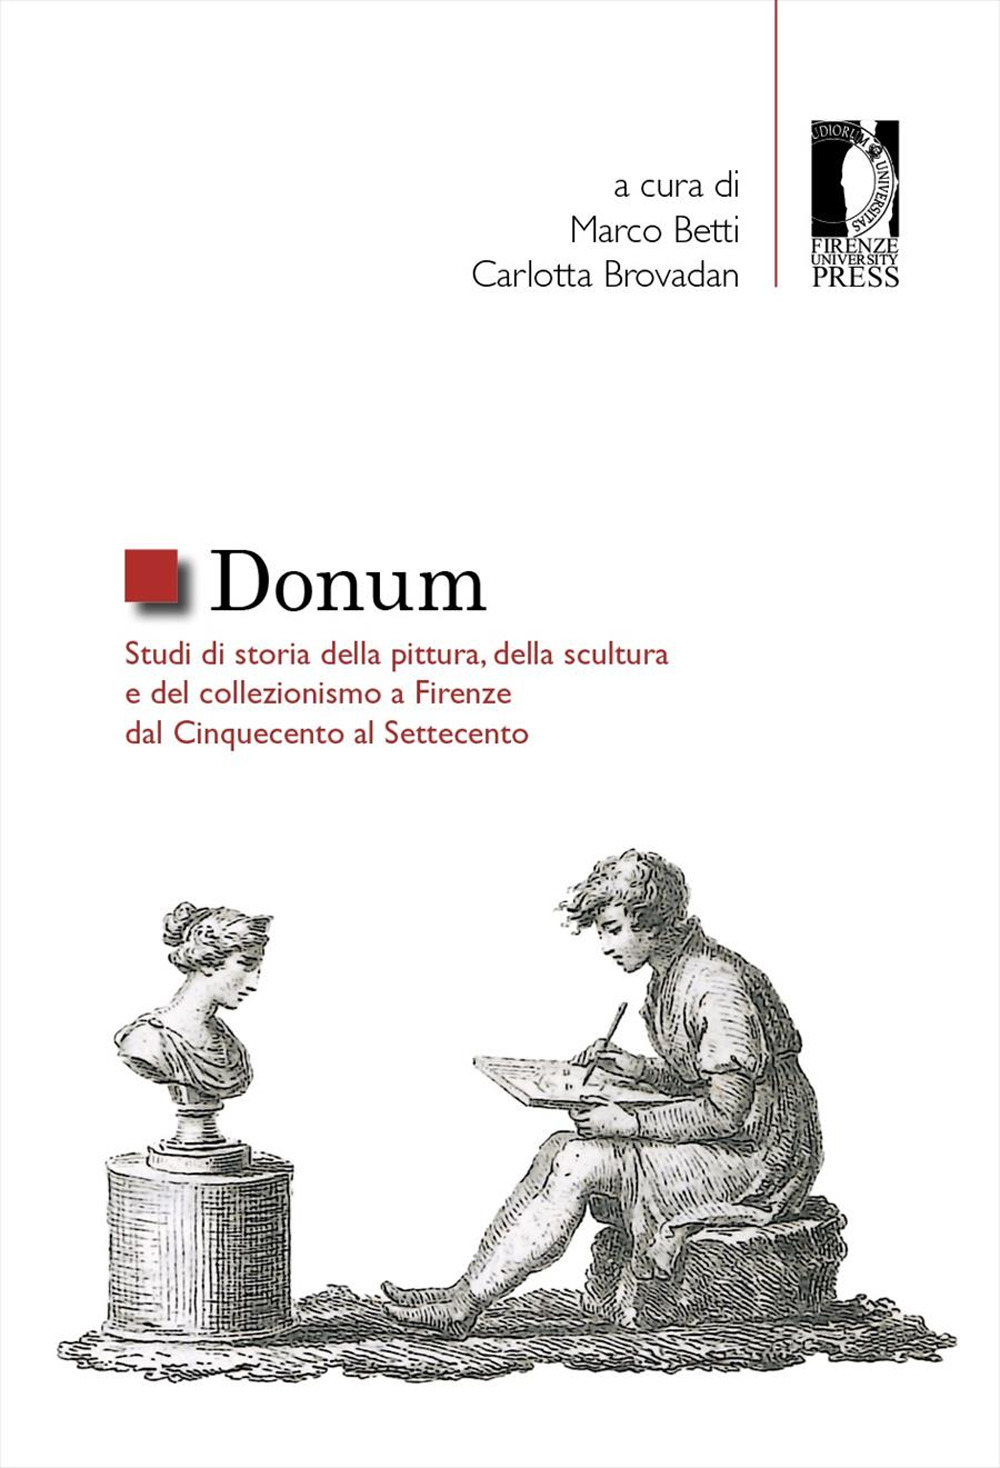 Donum. Studi di storia della pittura, della scultura e del collezionismo a Firenze dal Cinquecento al Settecento